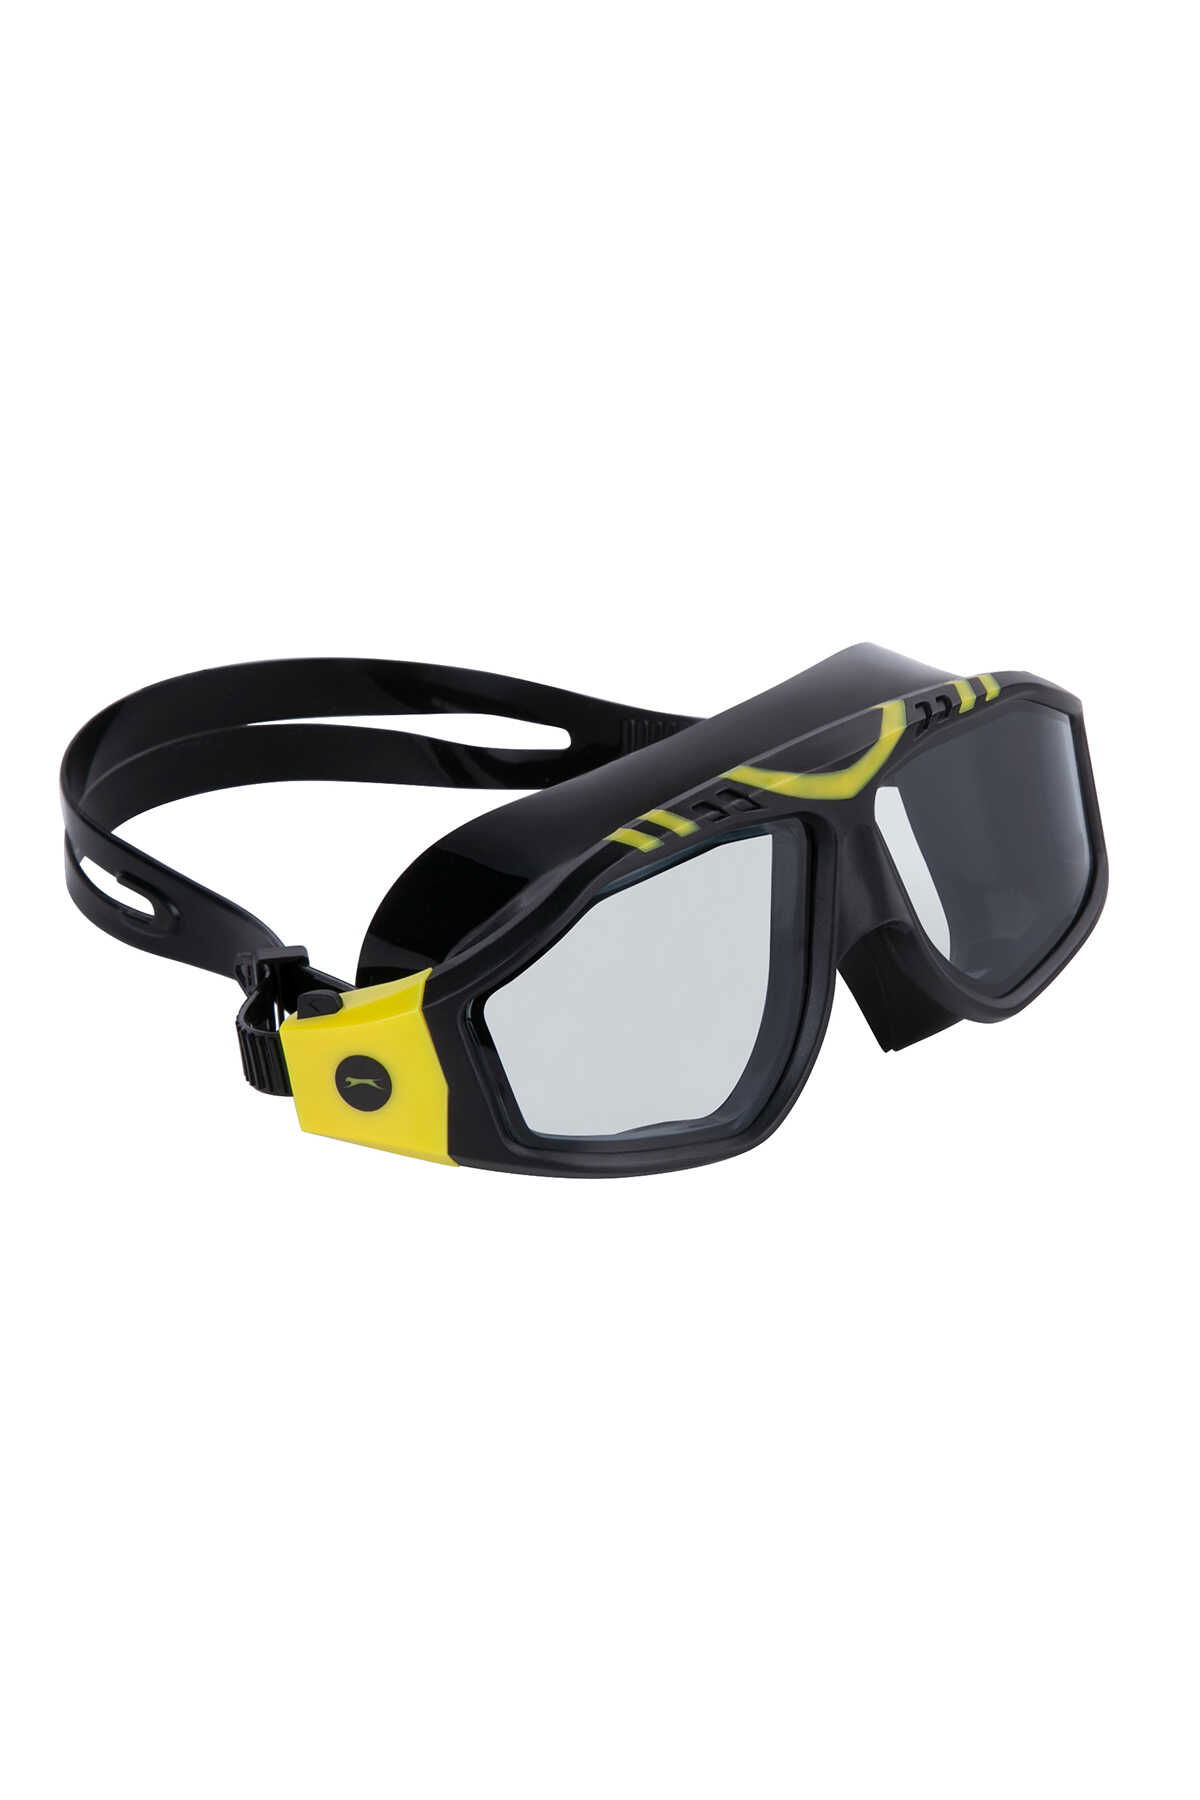 Slazenger - Slazenger GL6 Unisex Yüzücü Gözlüğü Siyah